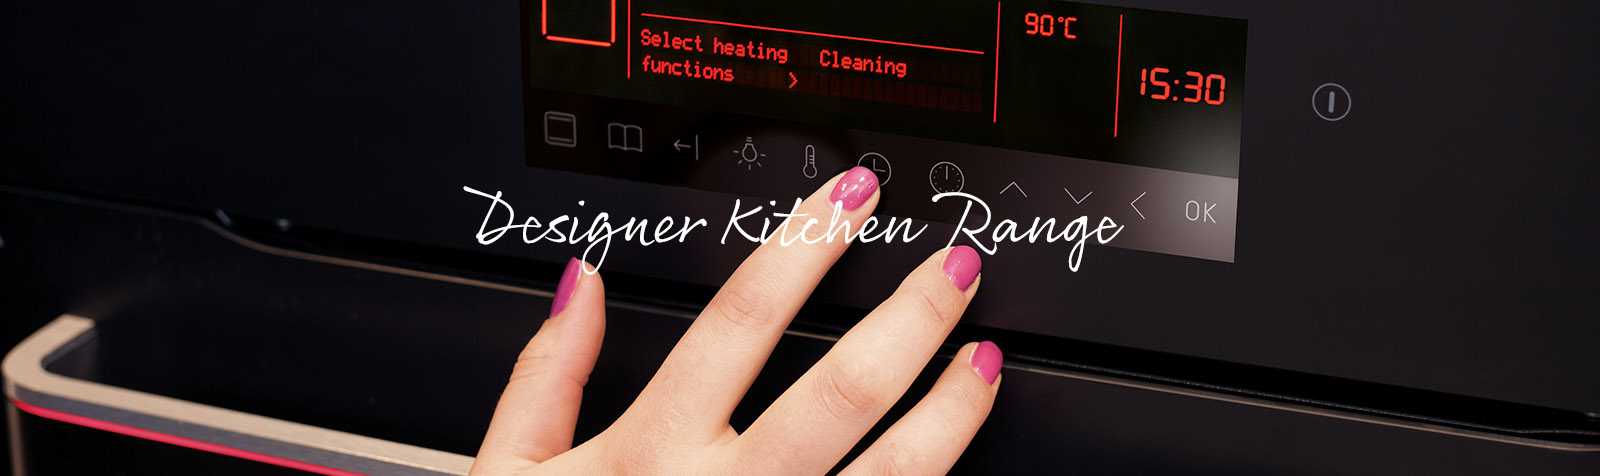 Designer Kitchen Range